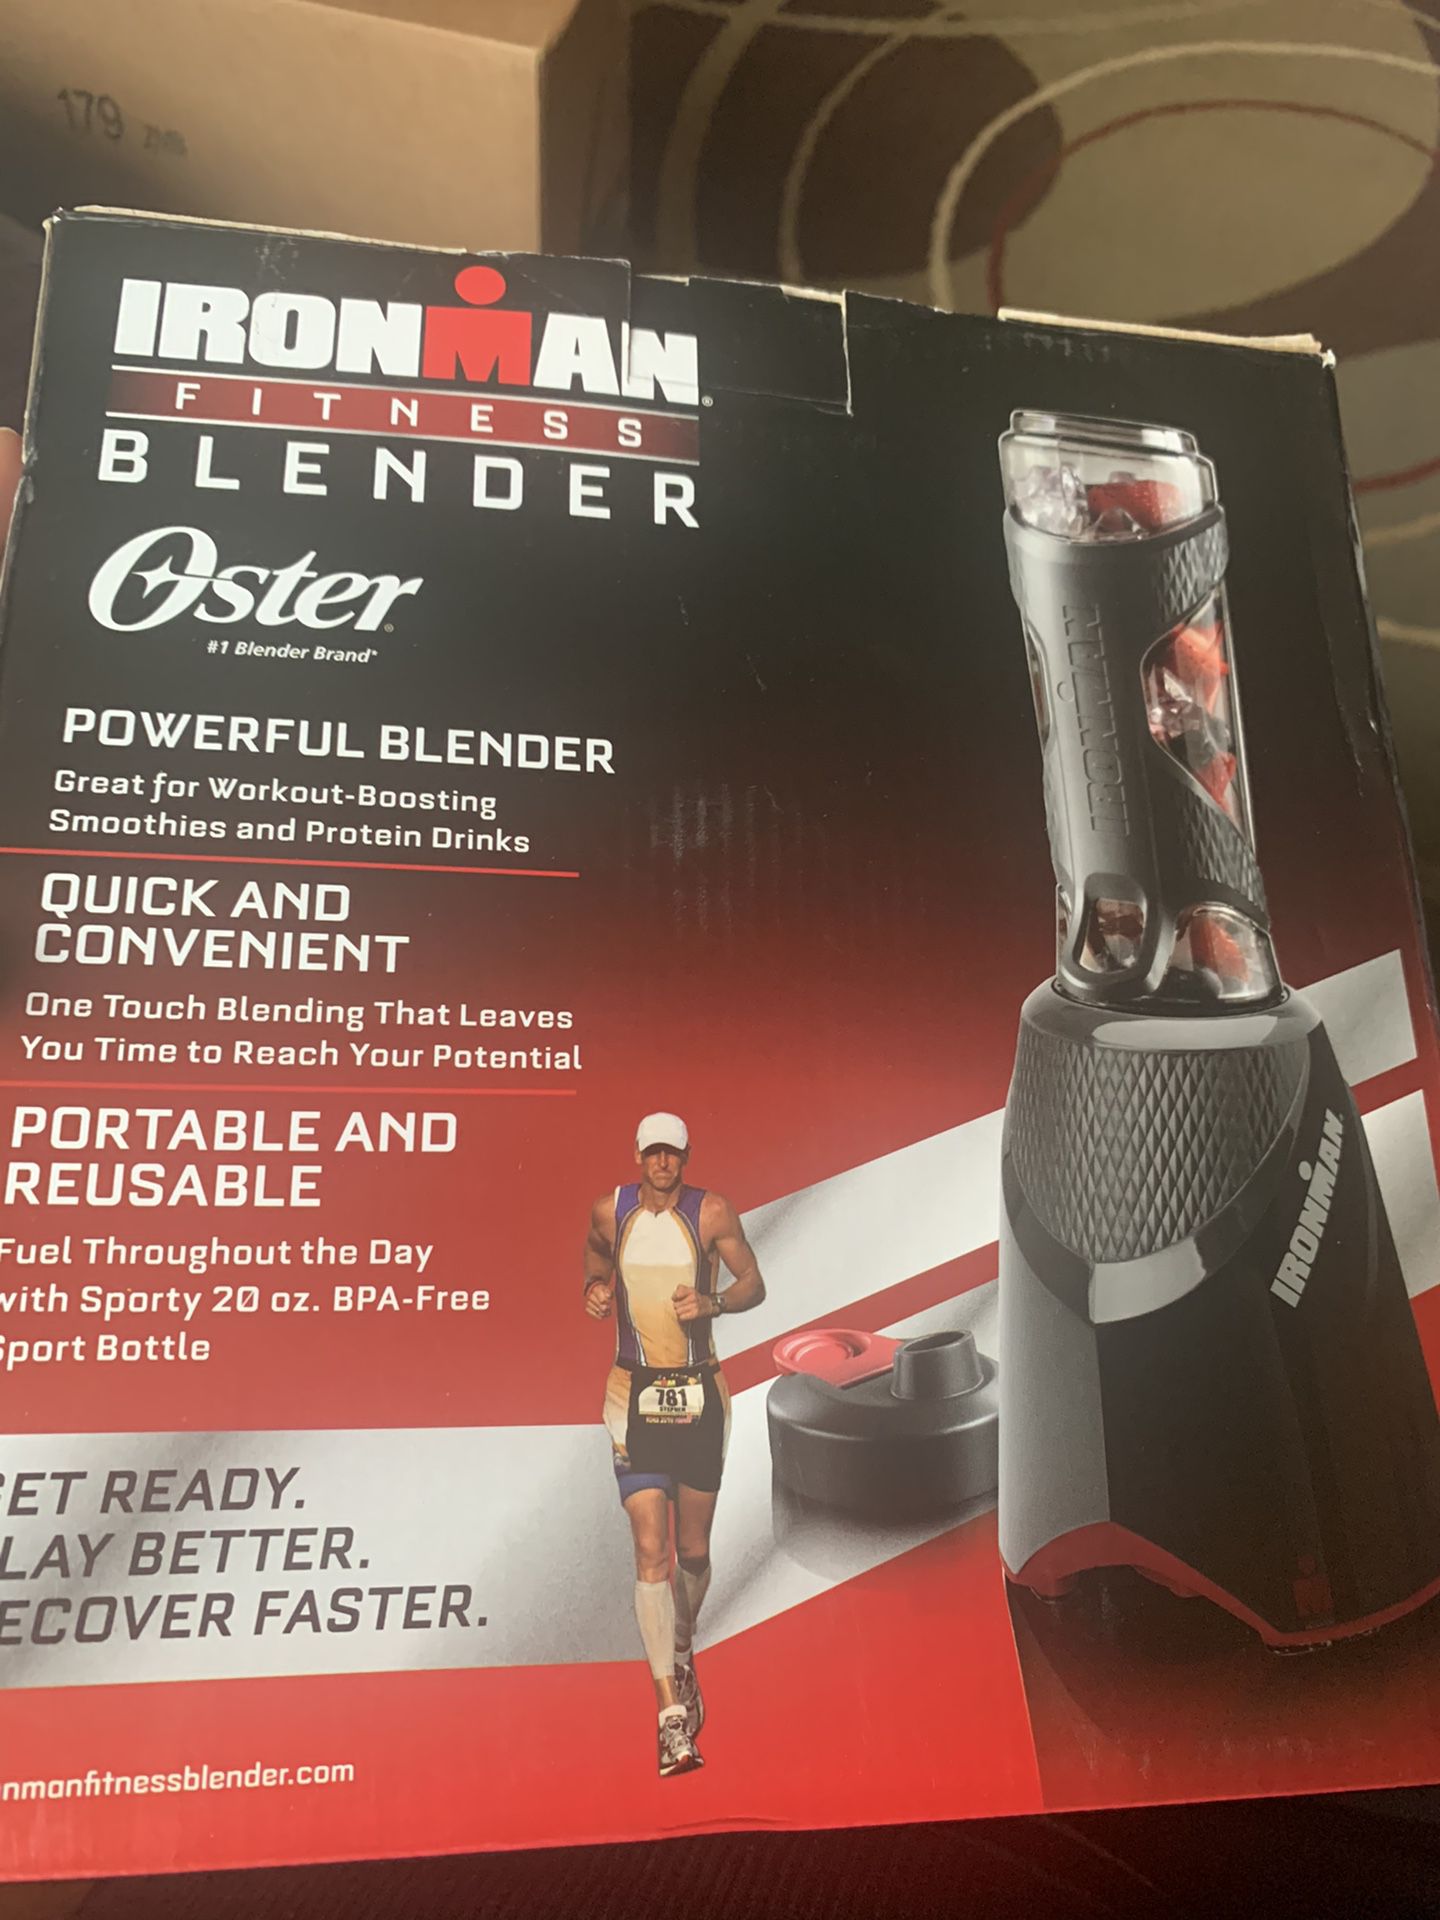 Ironman fitness oaster blender new